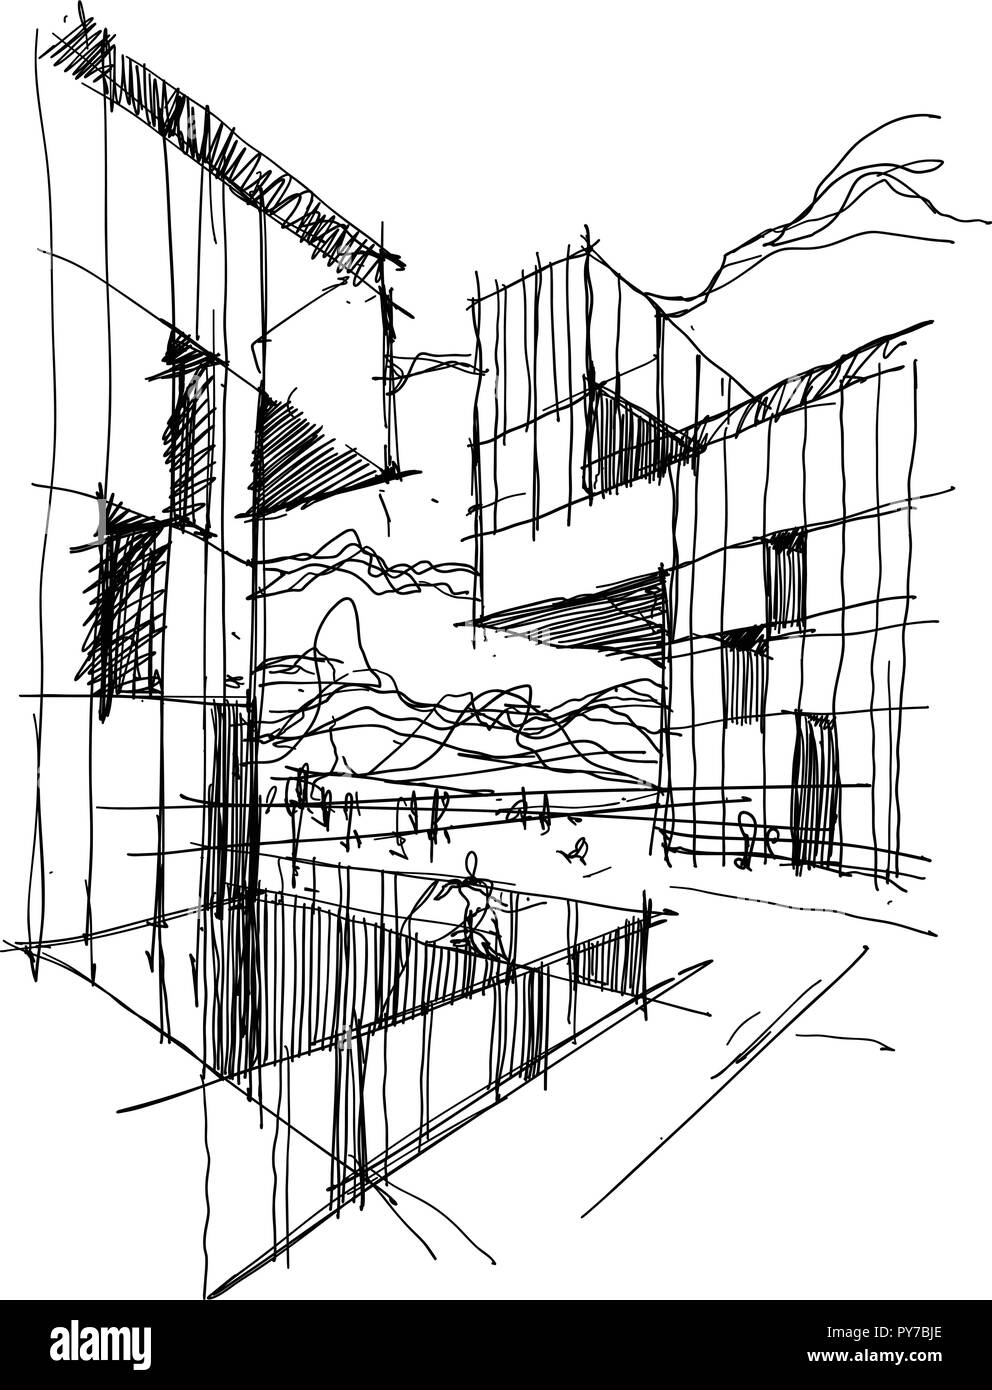 Disegnato a mano schizzo architettonico di una moderna architettura astratta con le persone intorno a Illustrazione Vettoriale